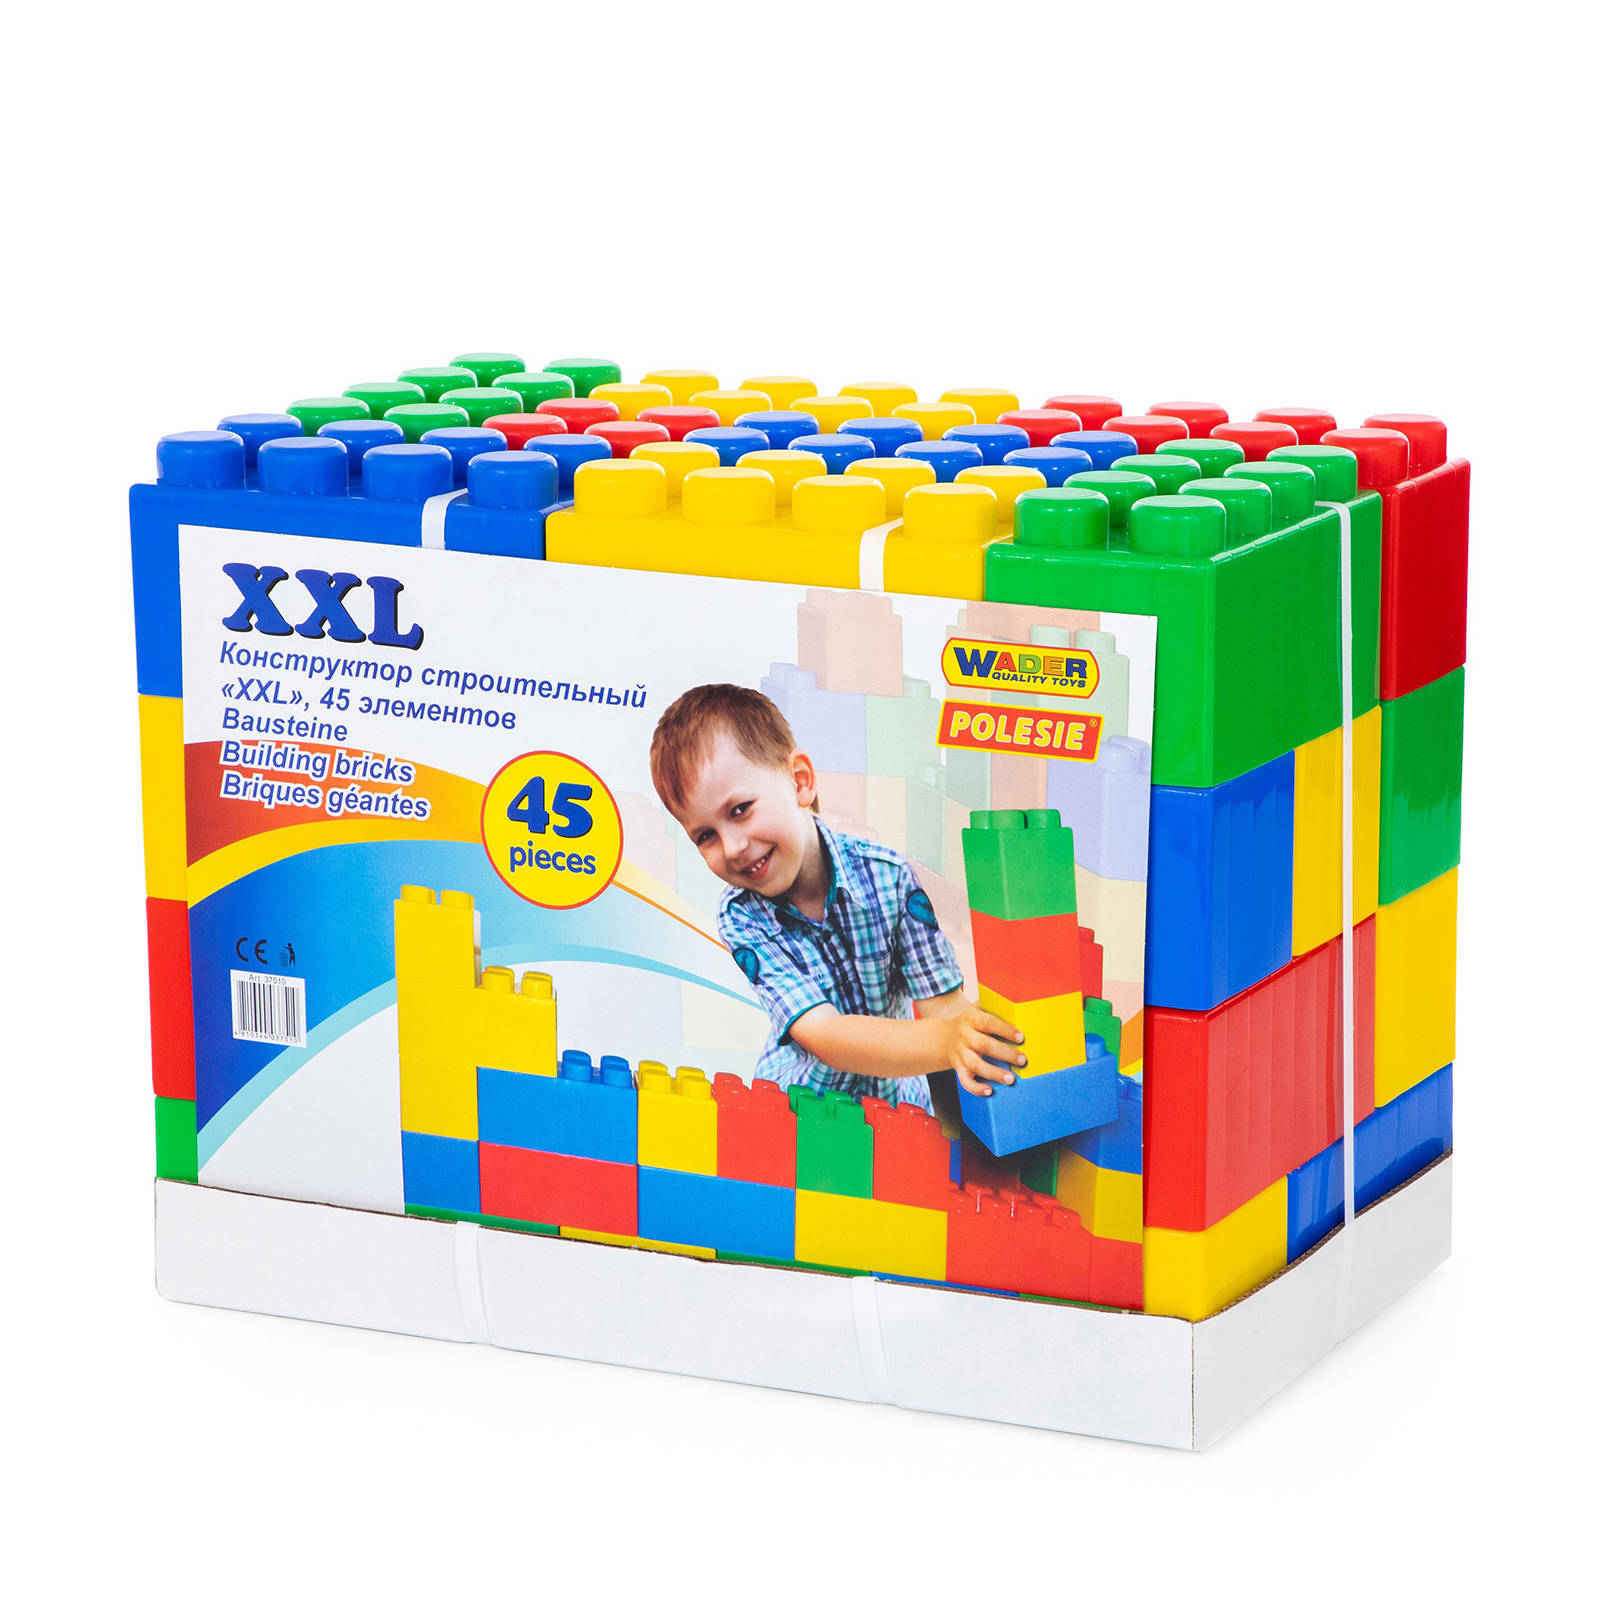 Wader Quality Toys WADER Bouwstenen XXL 45 Stuks online kopen